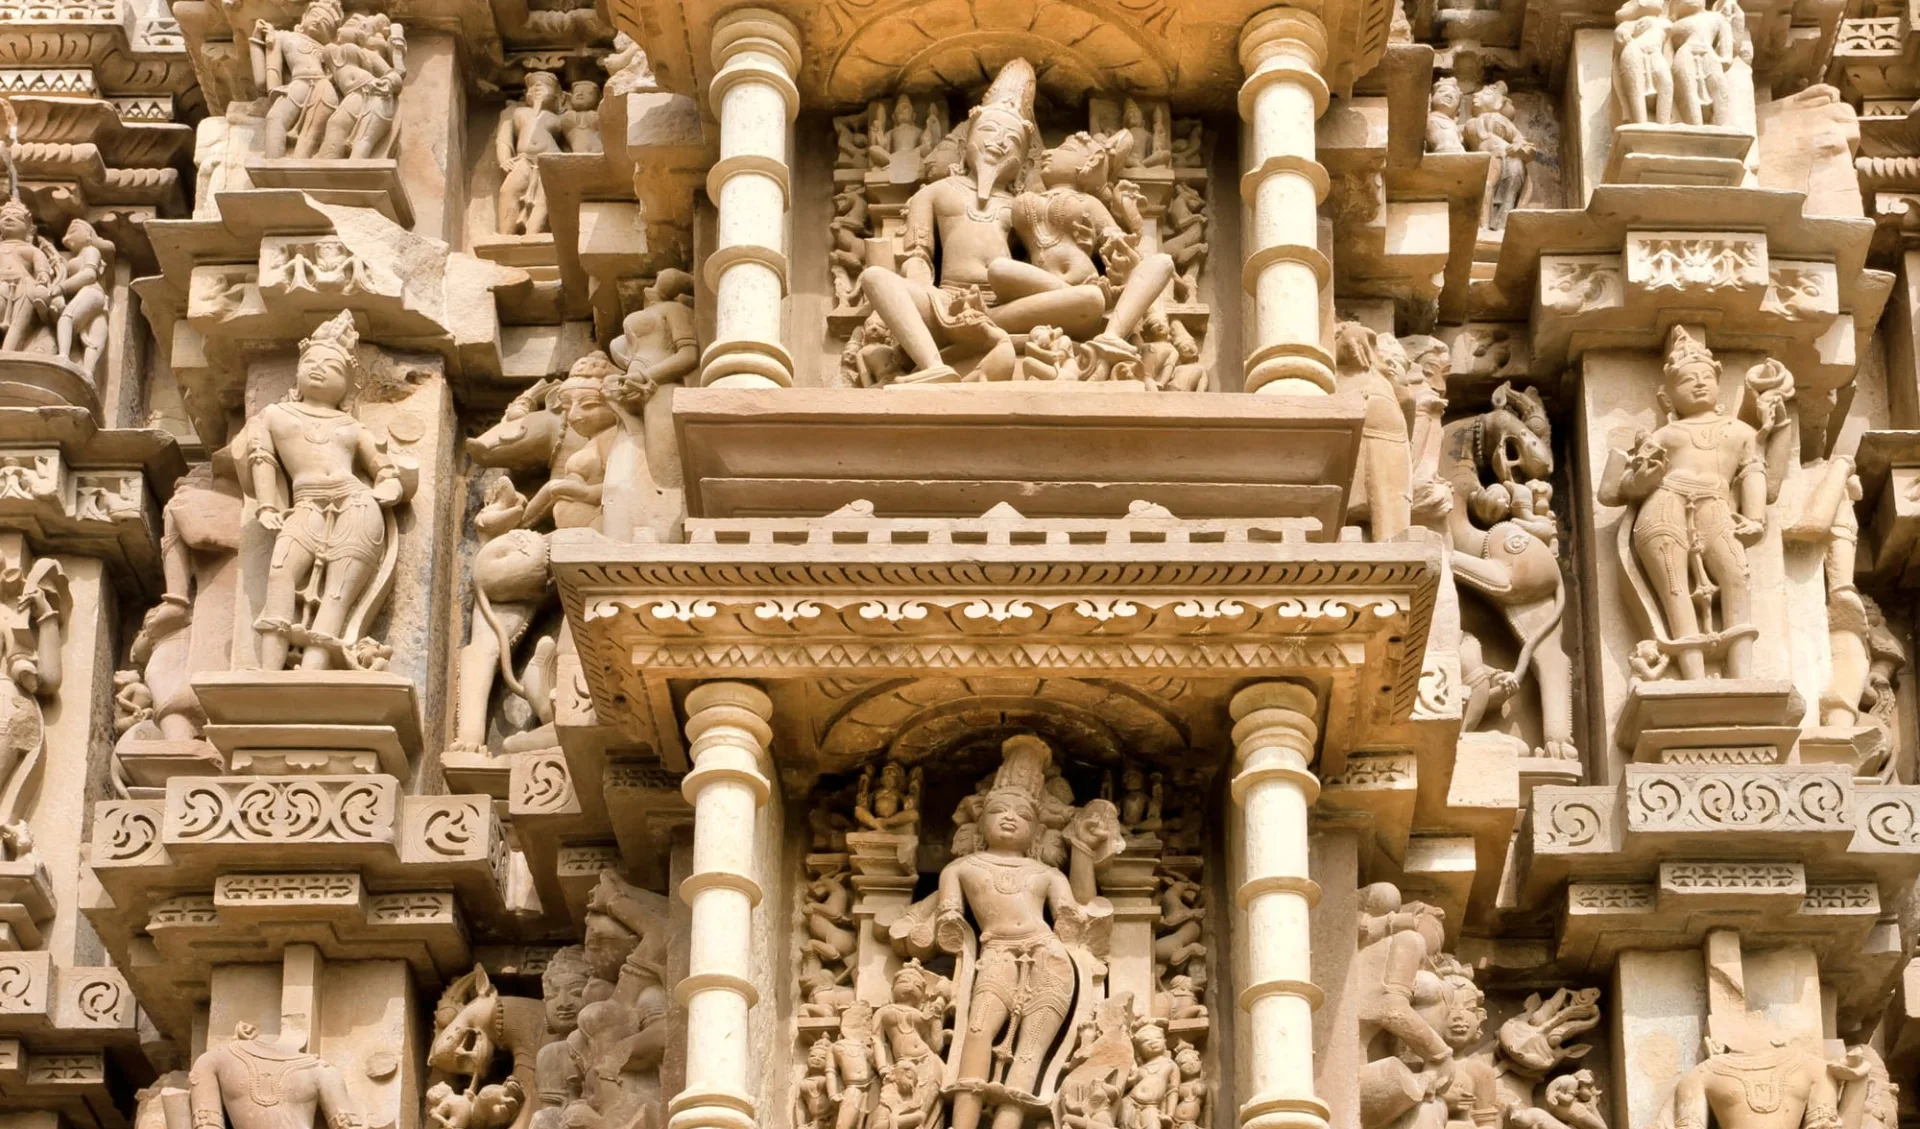 Reise zum heiligen Ganges ab Delhi: Sculptures, temple of Khajuraho